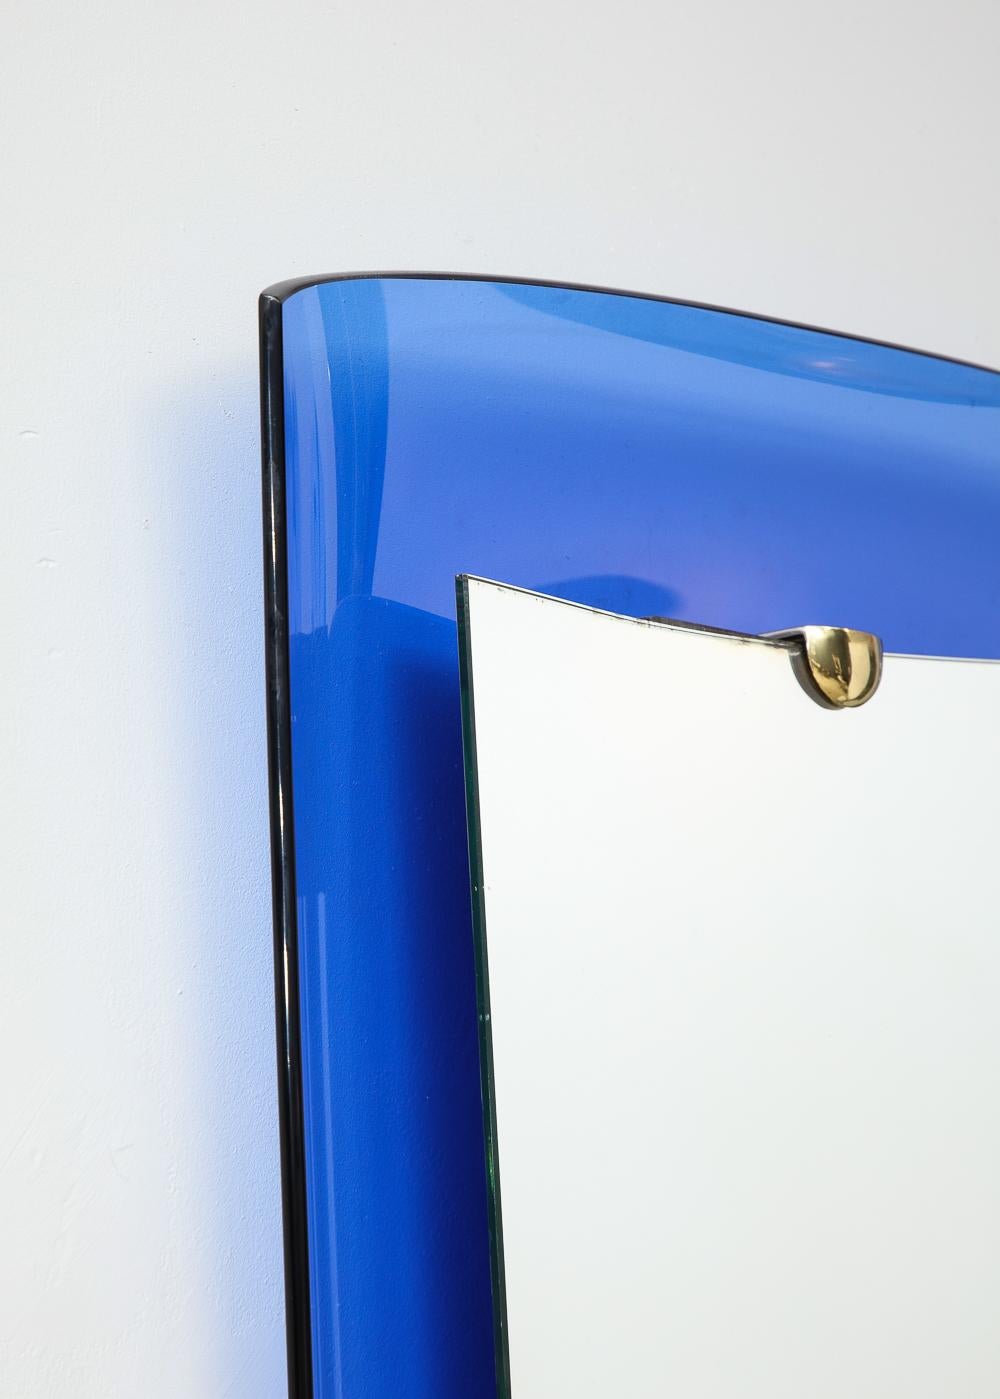 Verre, miroir, laiton. Le modèle #2712 de Cristal Art présente un cadre concave en verre bleu avec un centre en miroir surélevé maintenu par des ferrures en laiton.